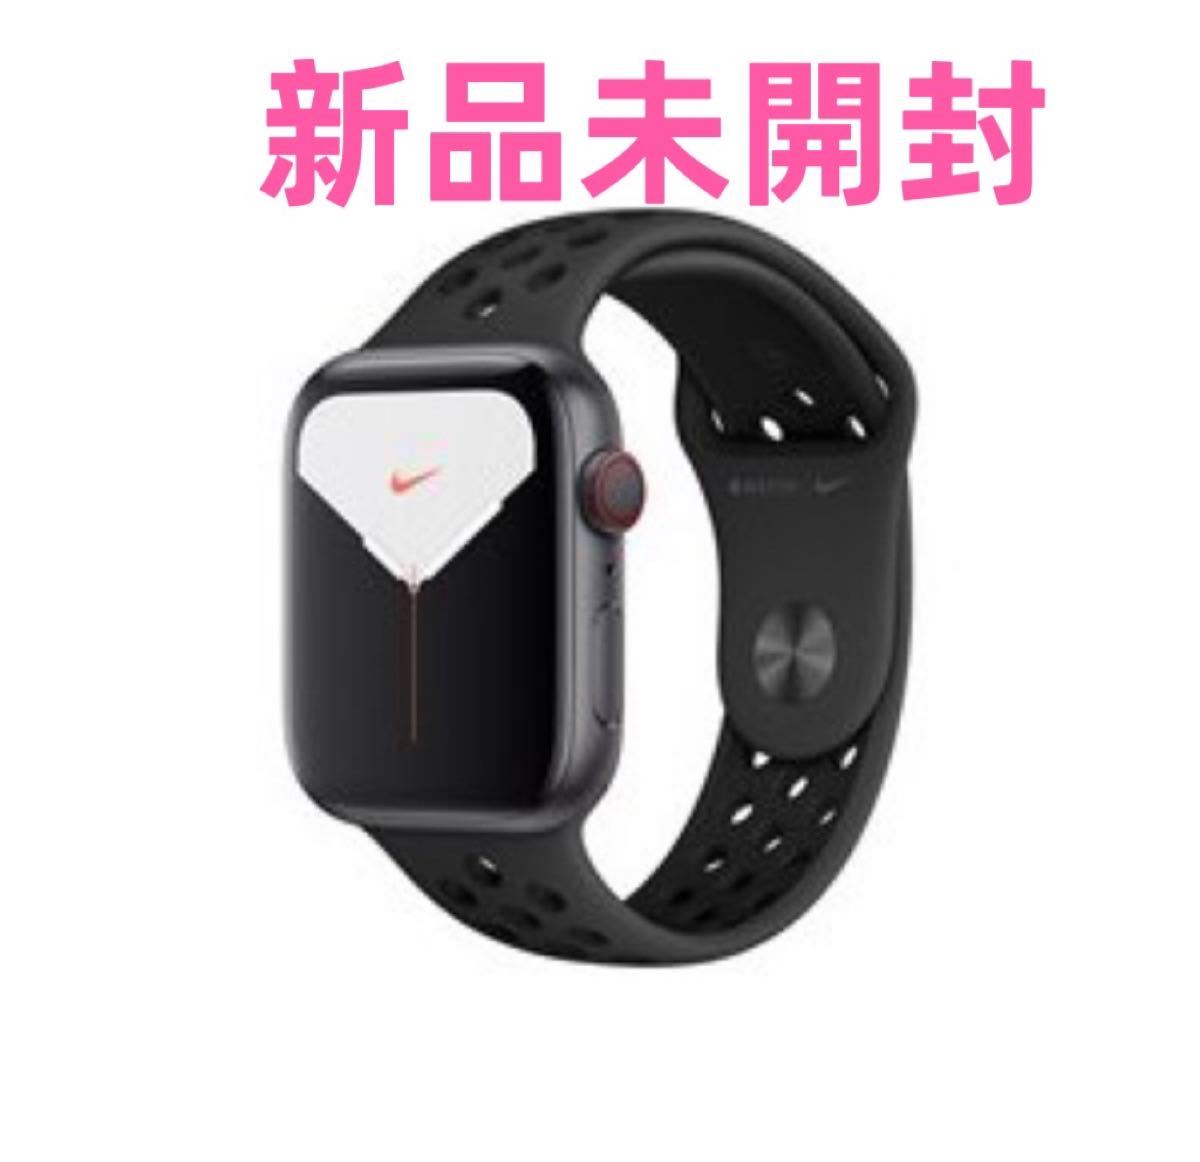 2022新生活 Apple Watch Series5 GPS+cellular NIKEモデル 通販